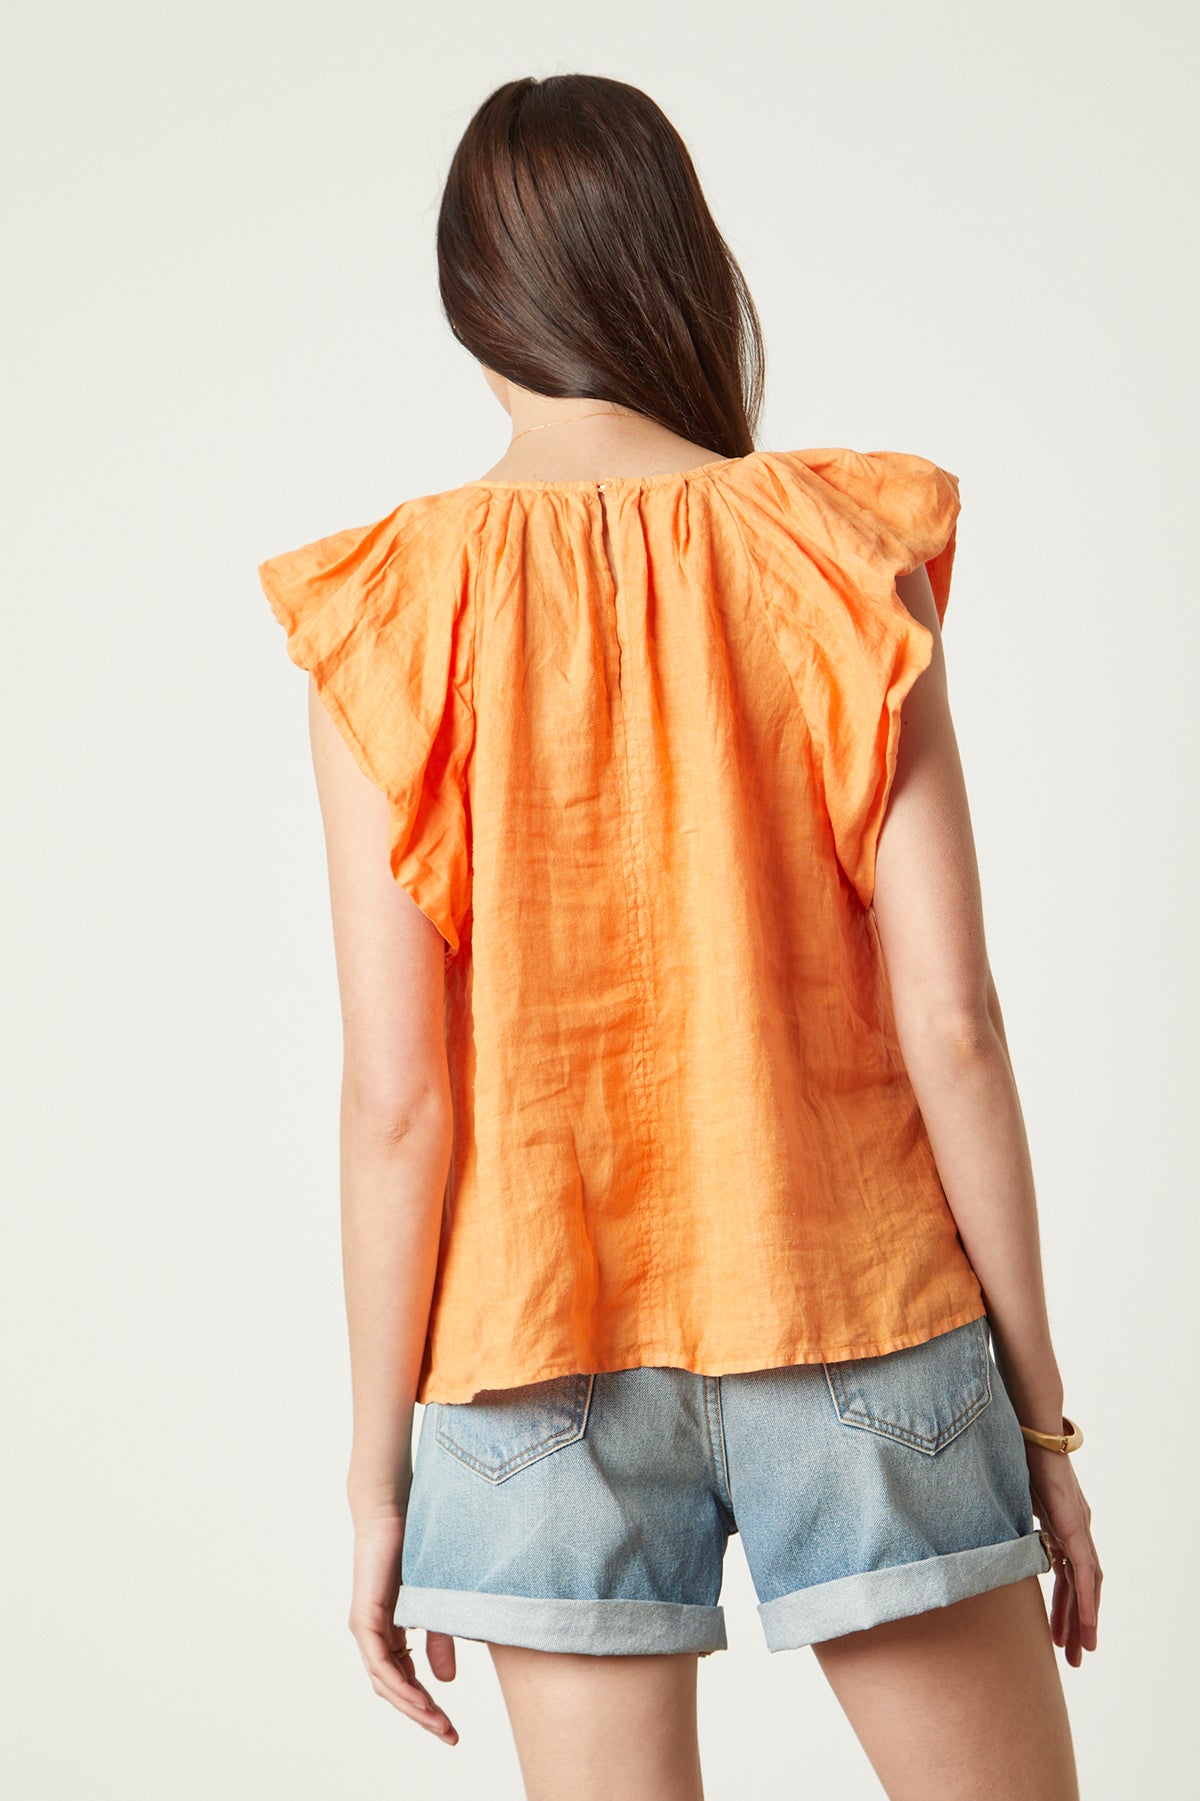 Ava Linen V-Neck Top in orange heat color with blue denim shorts back-26078935646401